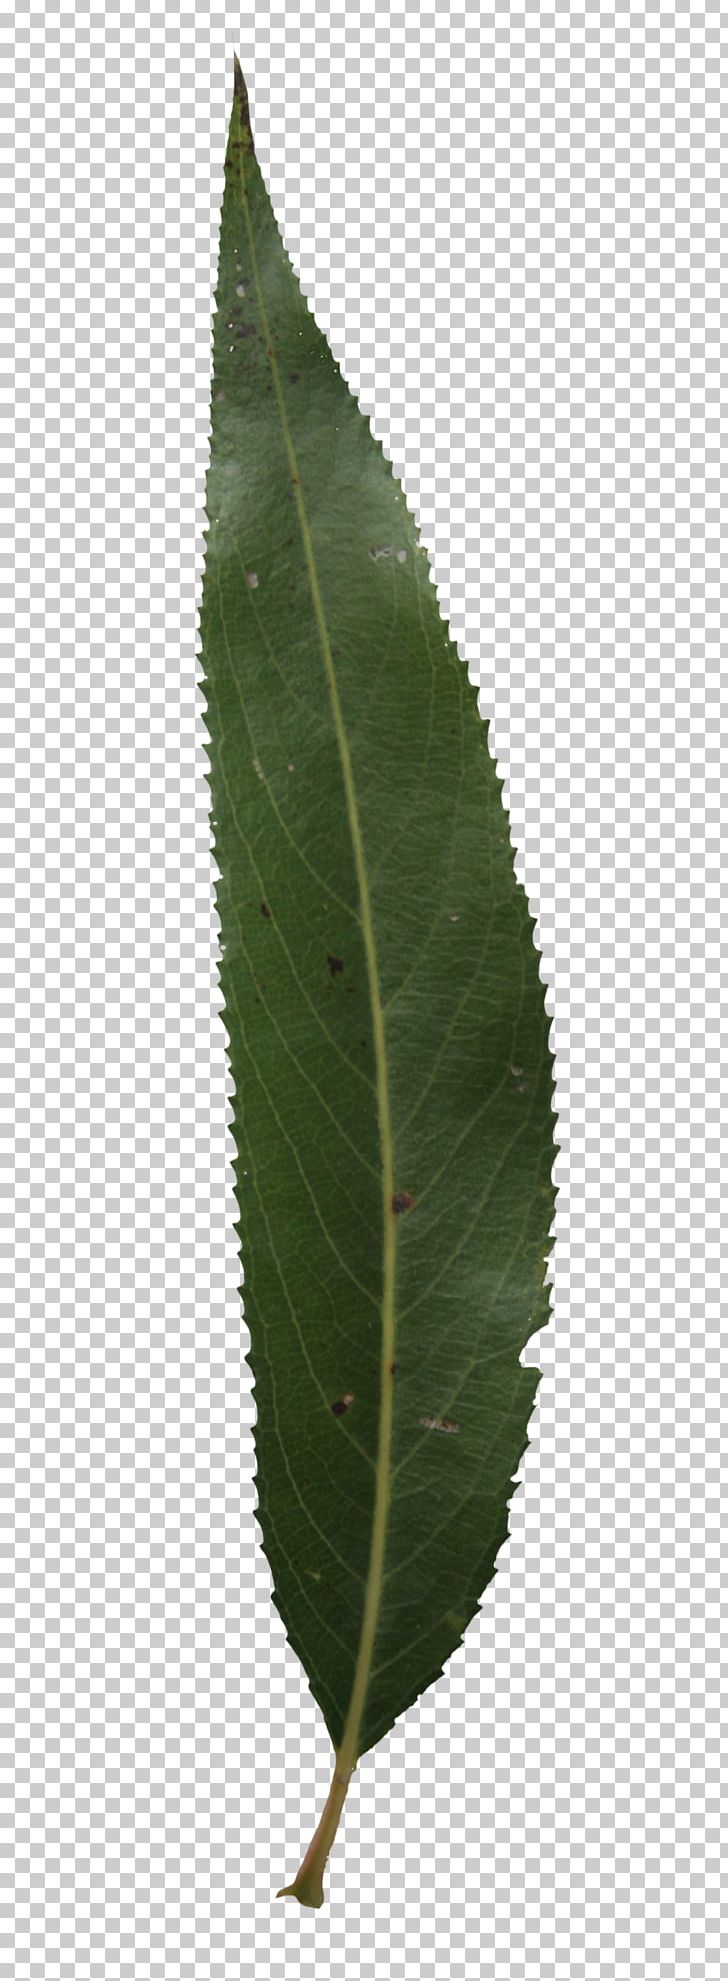 Leaf Plant Stem PNG, Clipart, Leaf, Leaf Texture, Plant, Plant Stem, Texture Free PNG Download